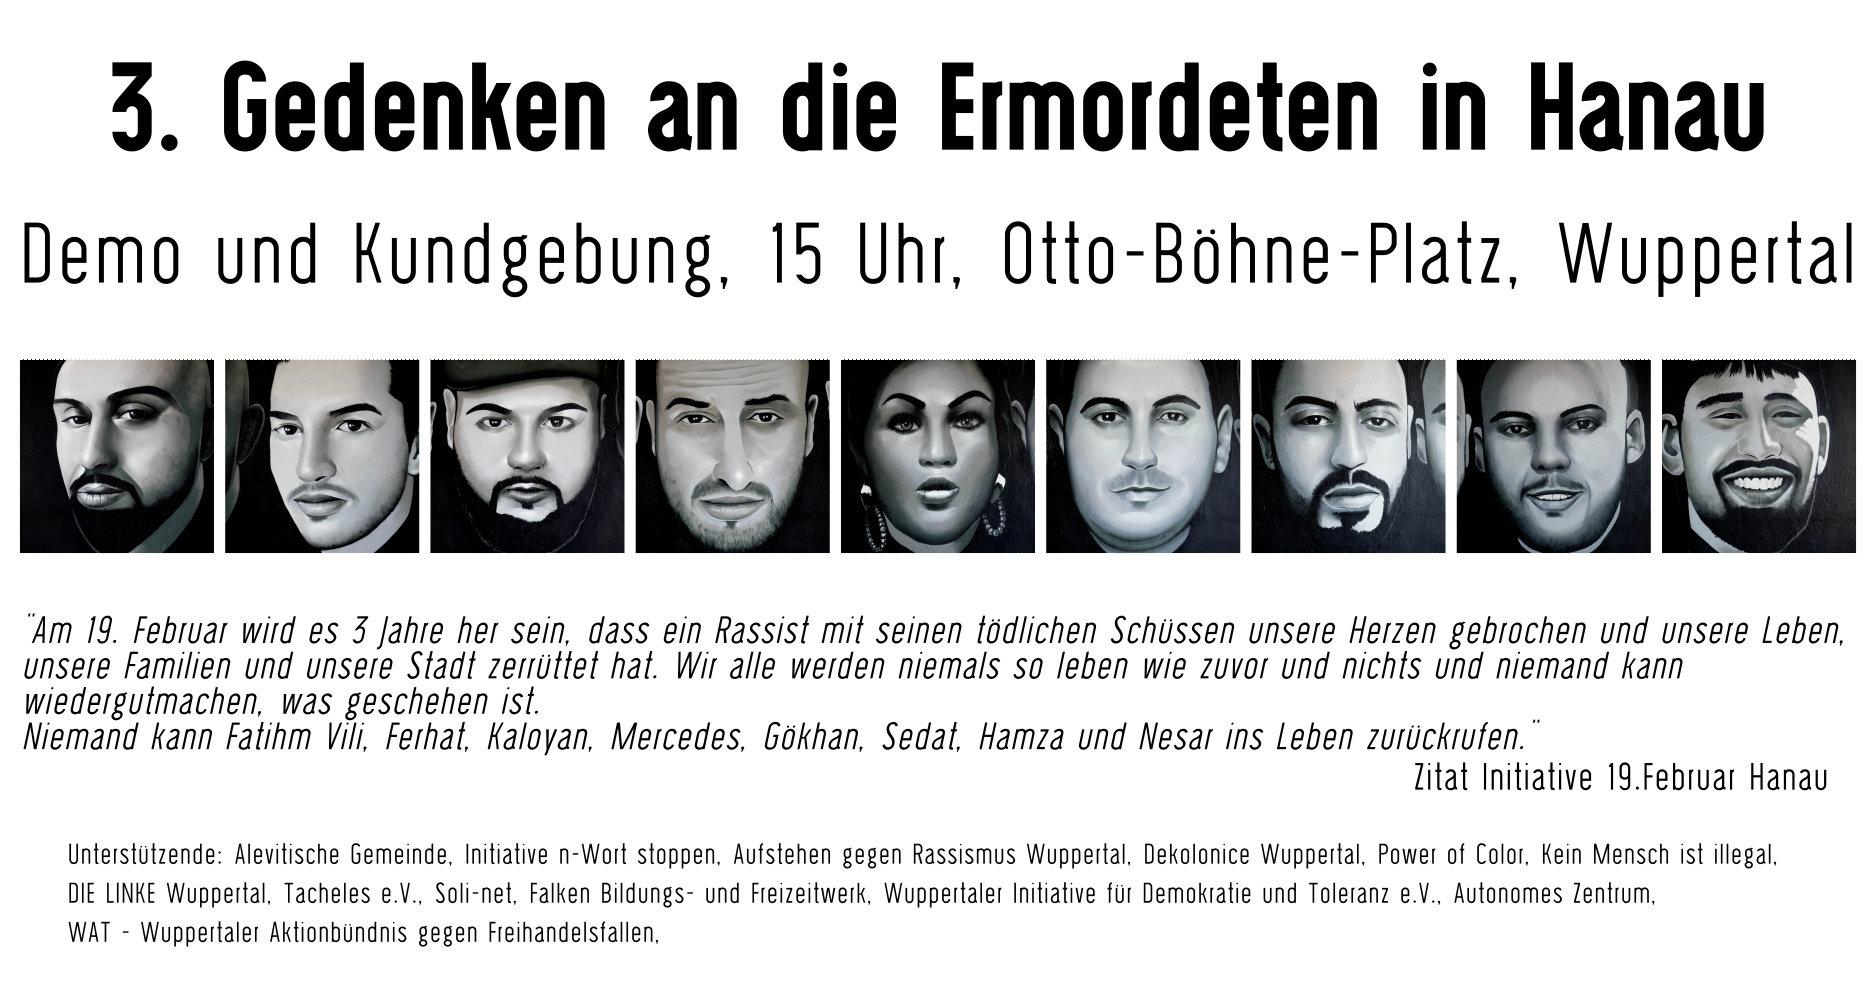 Gedenkveranstaltung zum 3. Jahrestag der Anschläge in Hanau am 19. Februar 